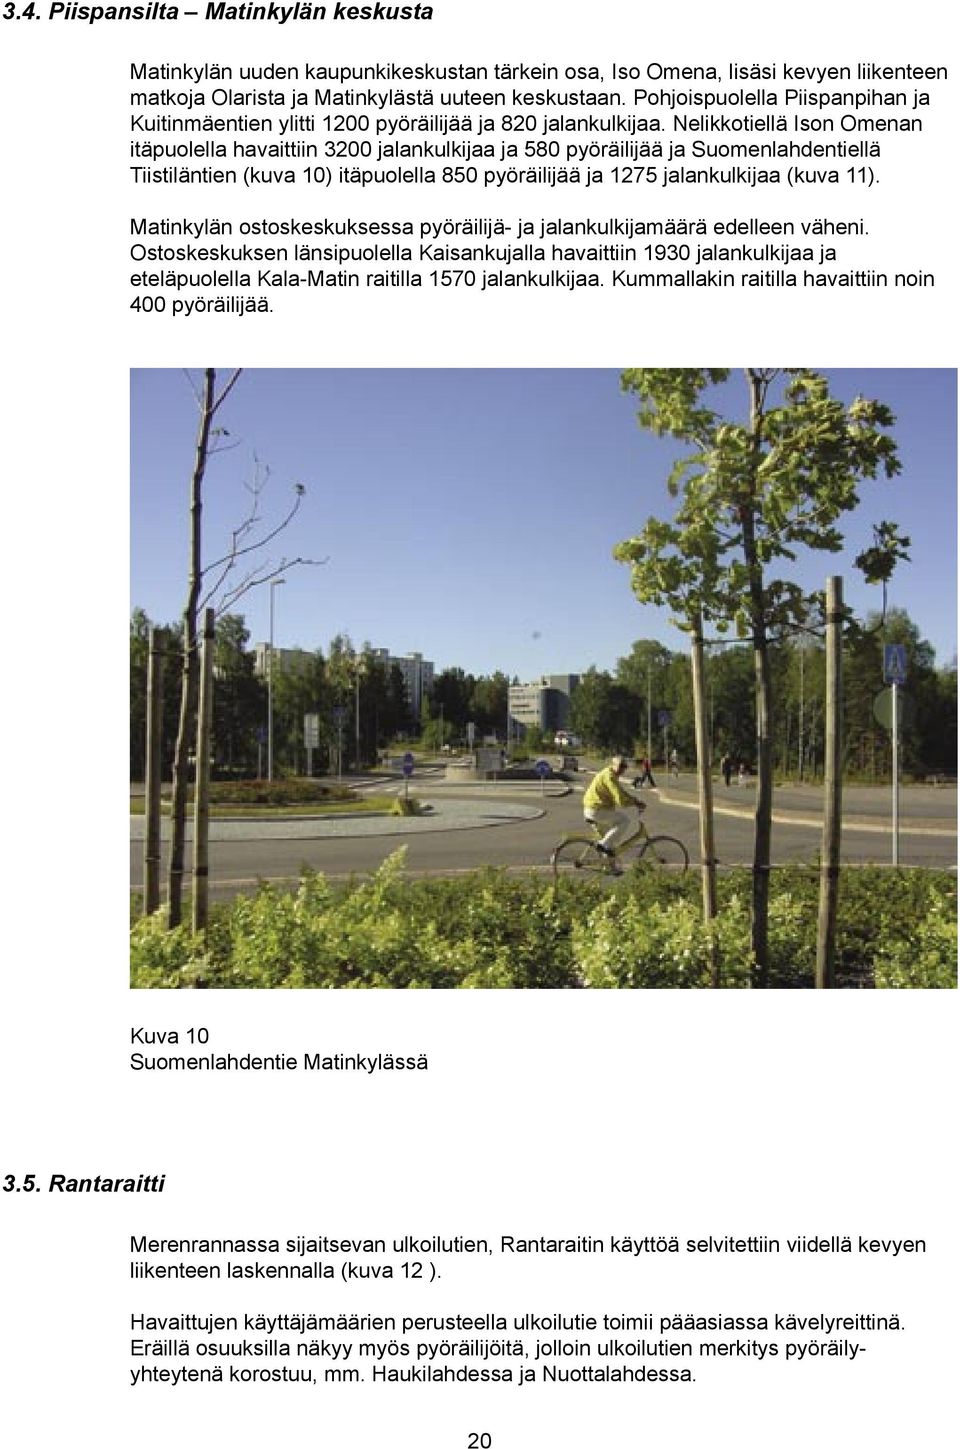 Nelikkotiellä Ison Omenan itäpuolella havaittiin 3200 jalankulkijaa ja 580 pyöräilijää ja Suomenlahdentiellä Tiistiläntien (kuva 10) itäpuolella 850 pyöräilijää ja 1275 jalankulkijaa (kuva 11).